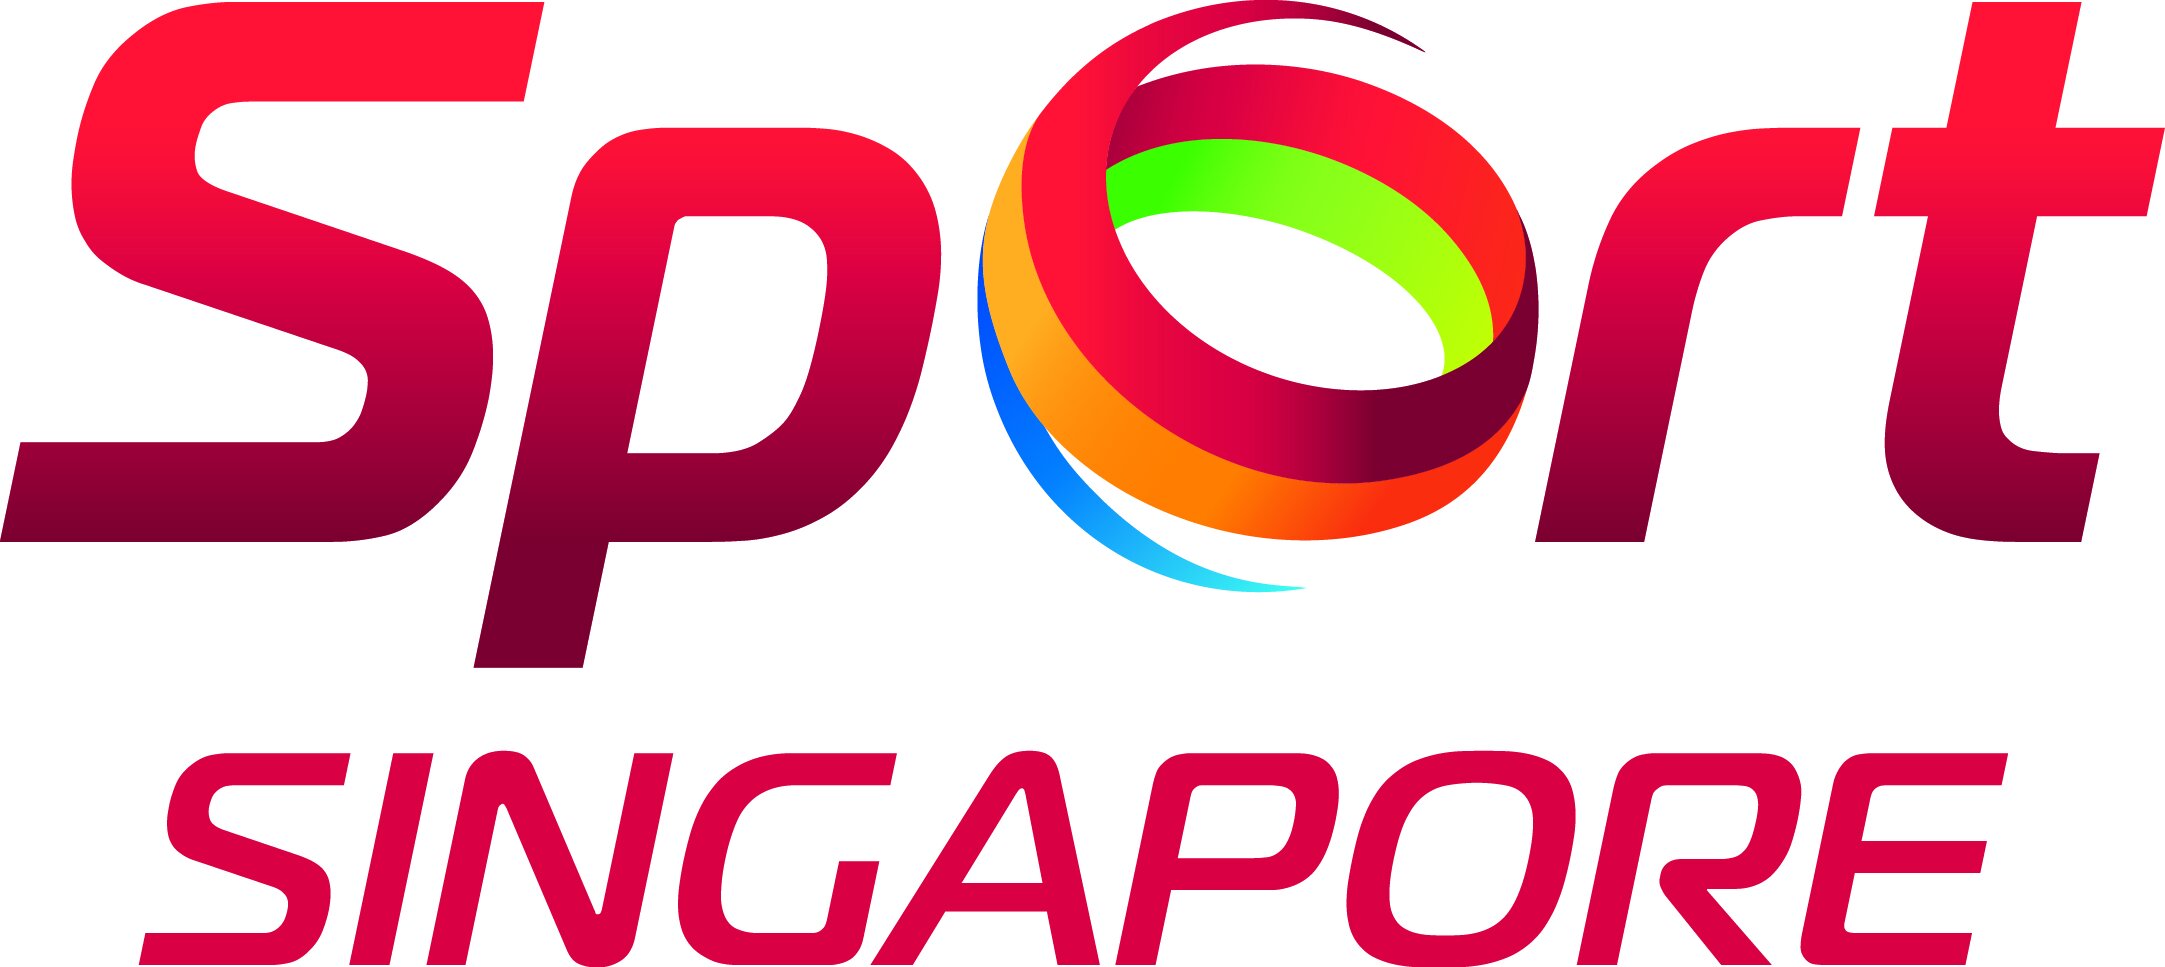 sport_sg_logo.jpg